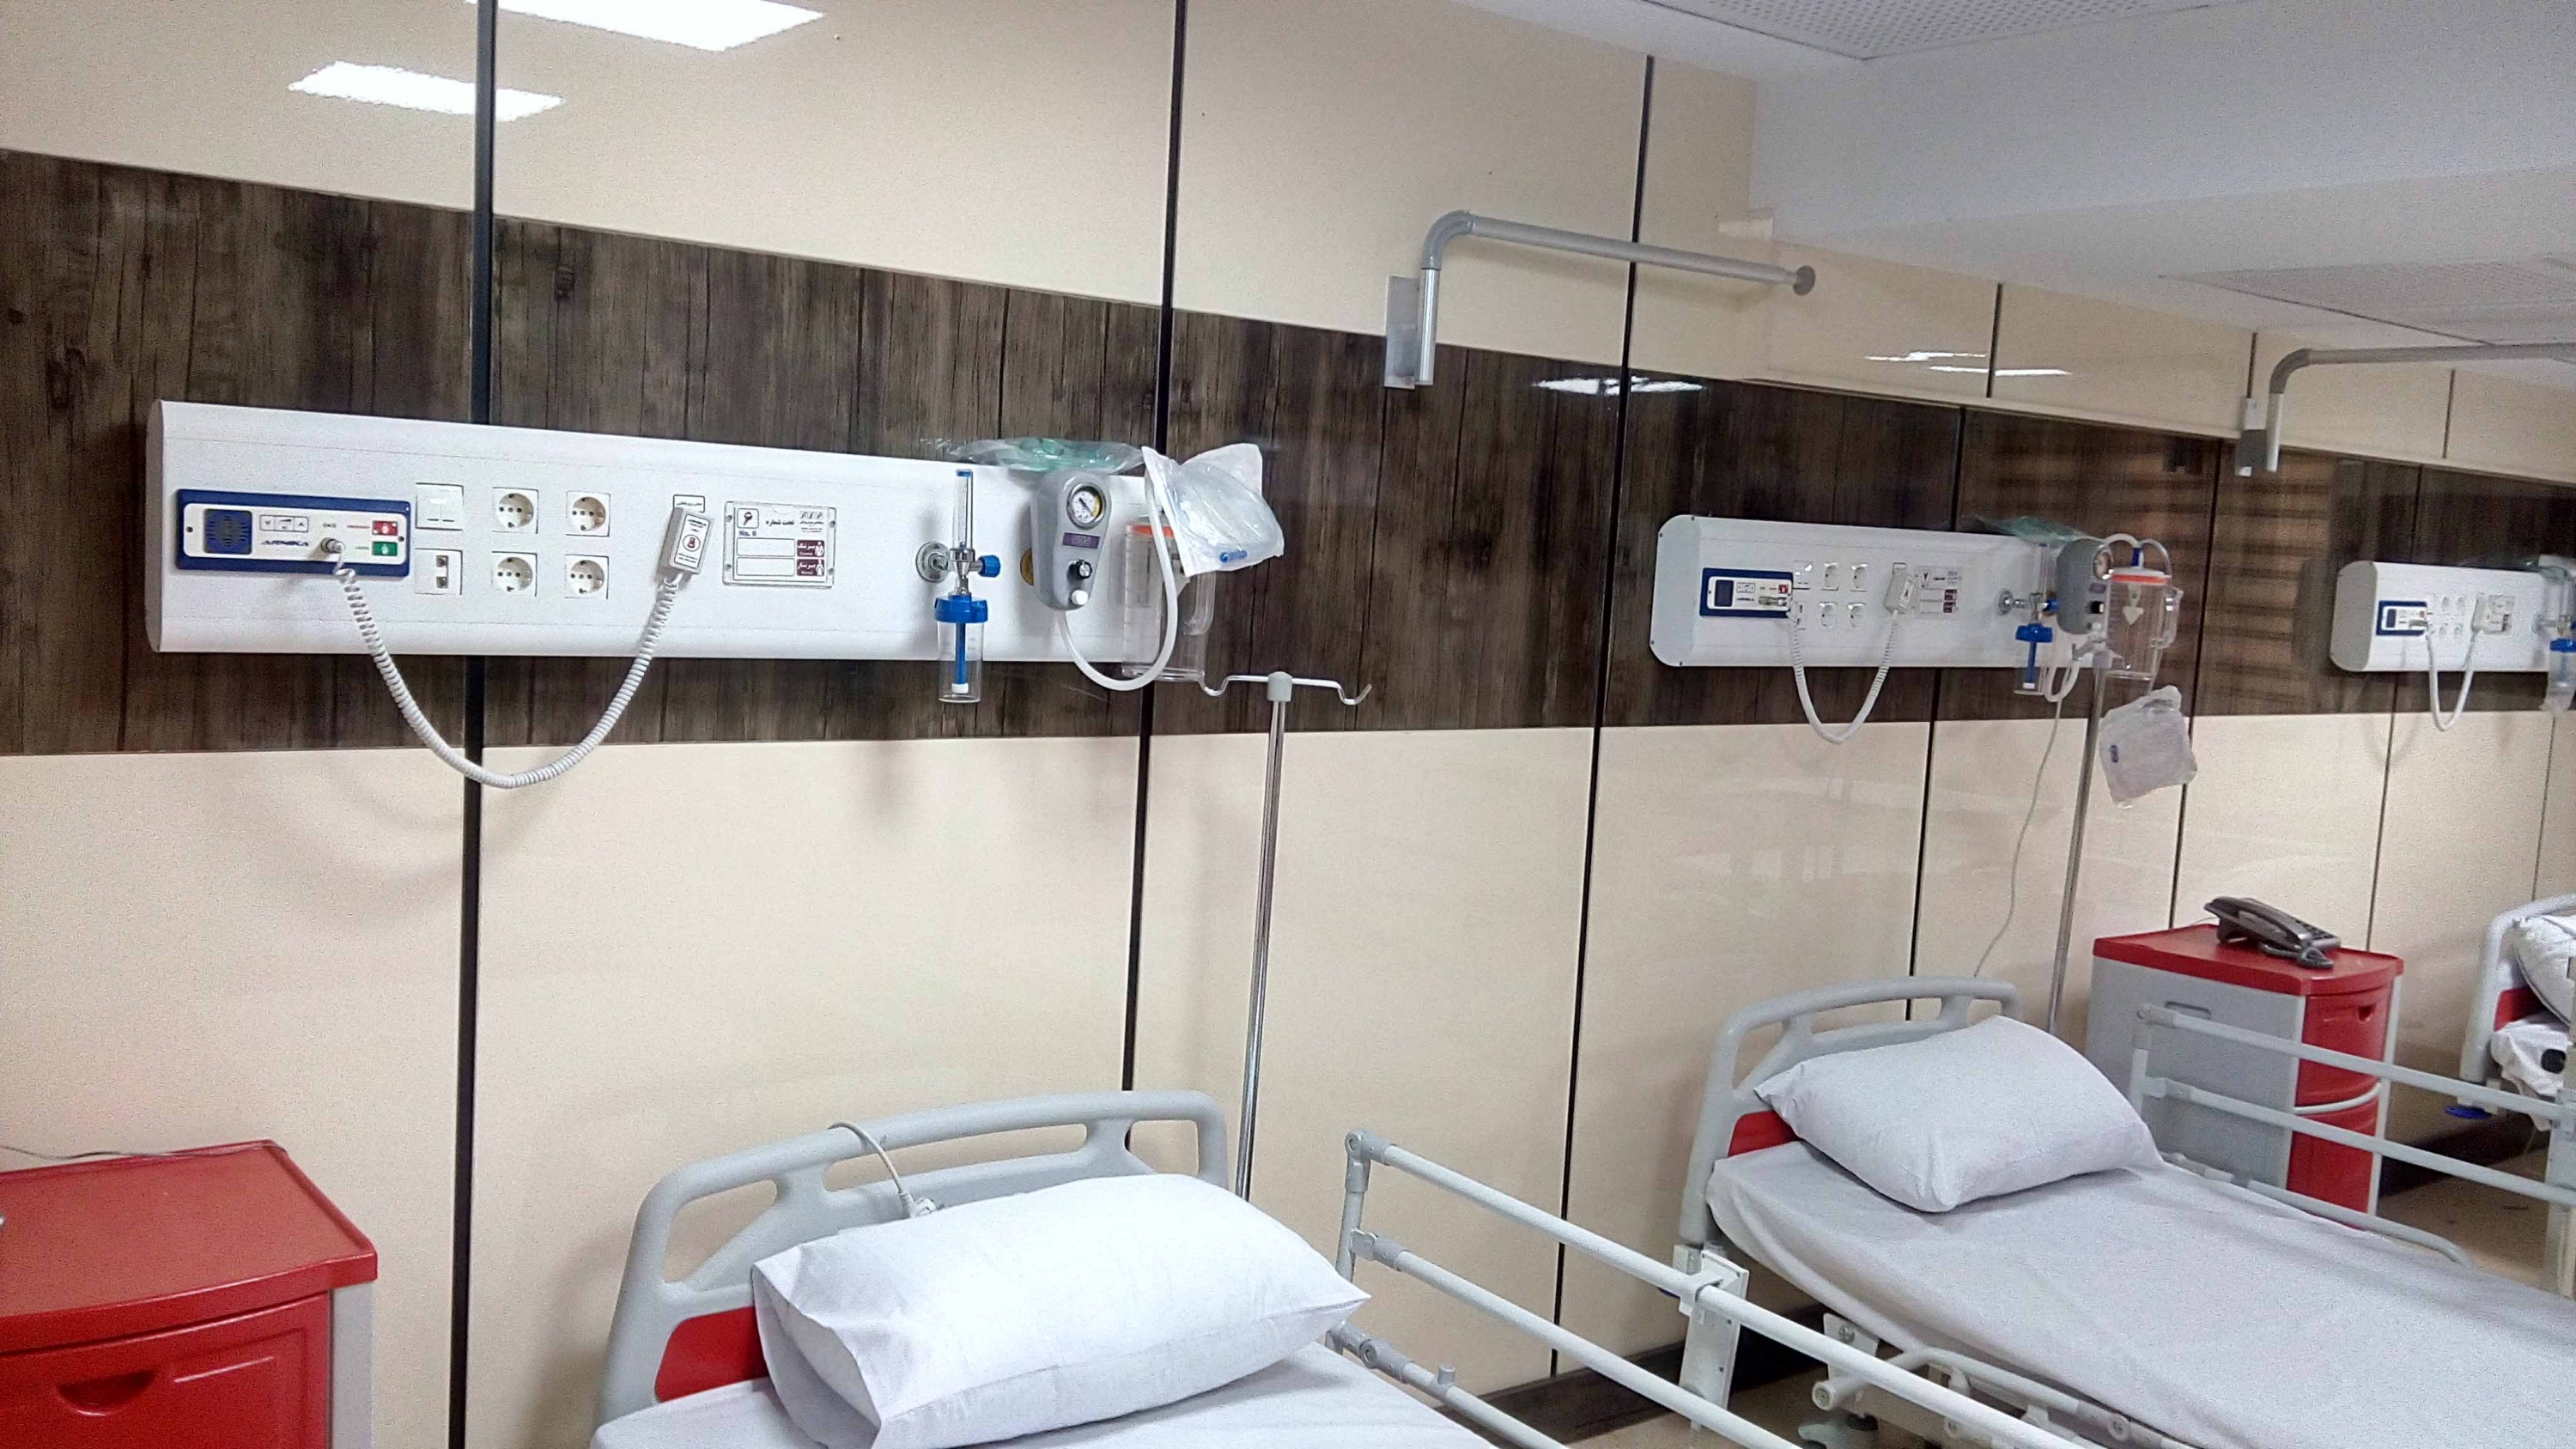 Hệ thống chuông báo gọi y tá được lắp đặt tại đầu giường bệnh nhân